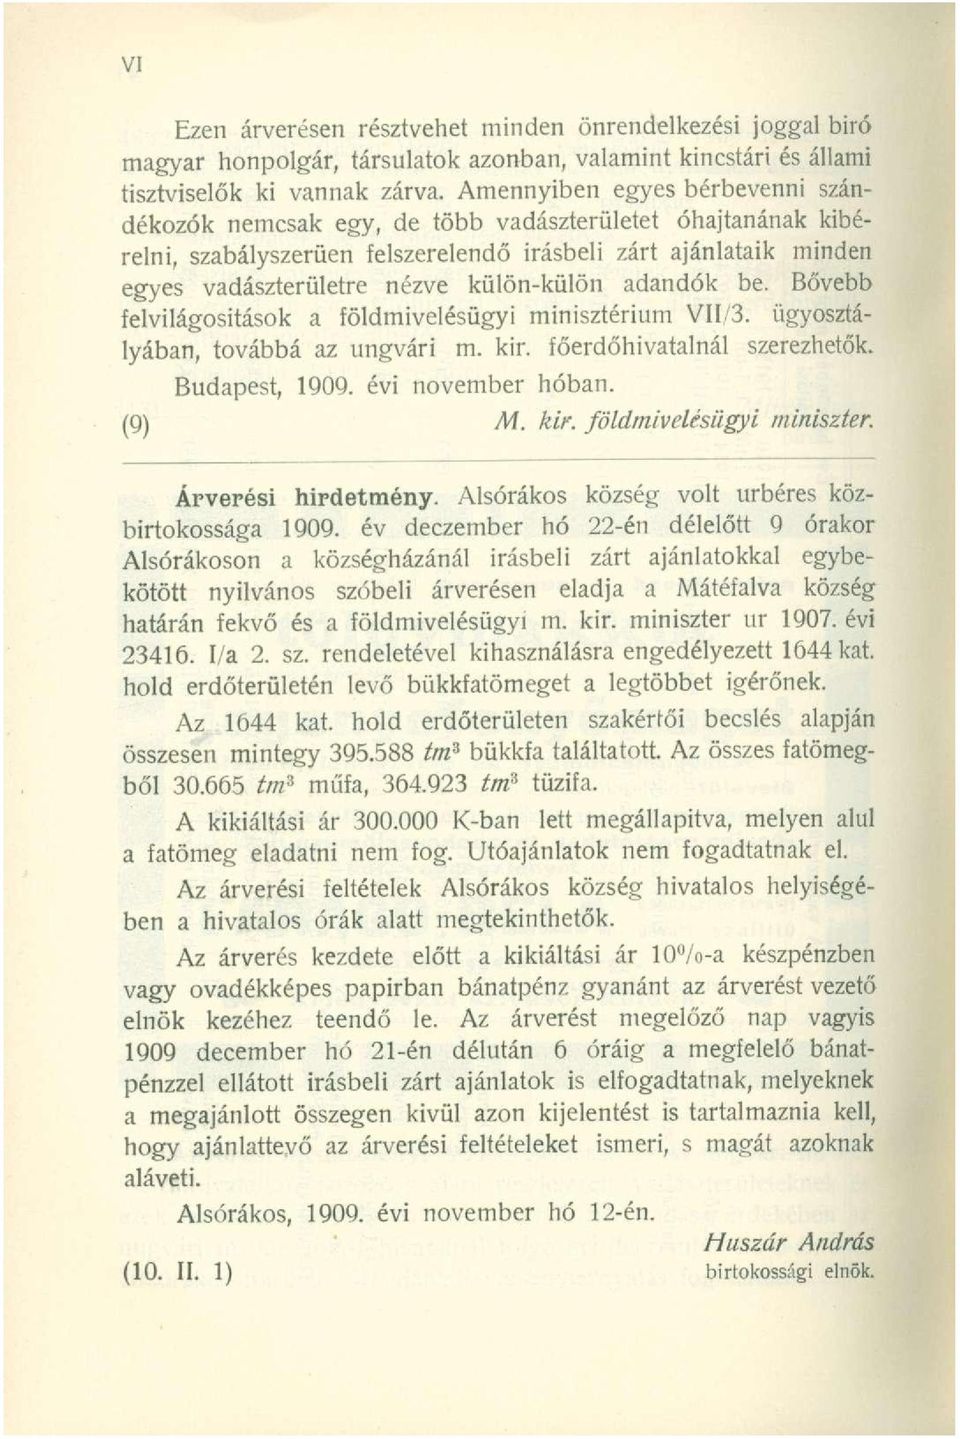 külön-külön adandók be. Bővebb felvilágosítások a földmivelésügyi minisztérium VII/3. ügyosztályában, továbbá az ungvári m. kir. főerdőhivatalnál szerezhetők. Budapest, 1909. évi november hóban.